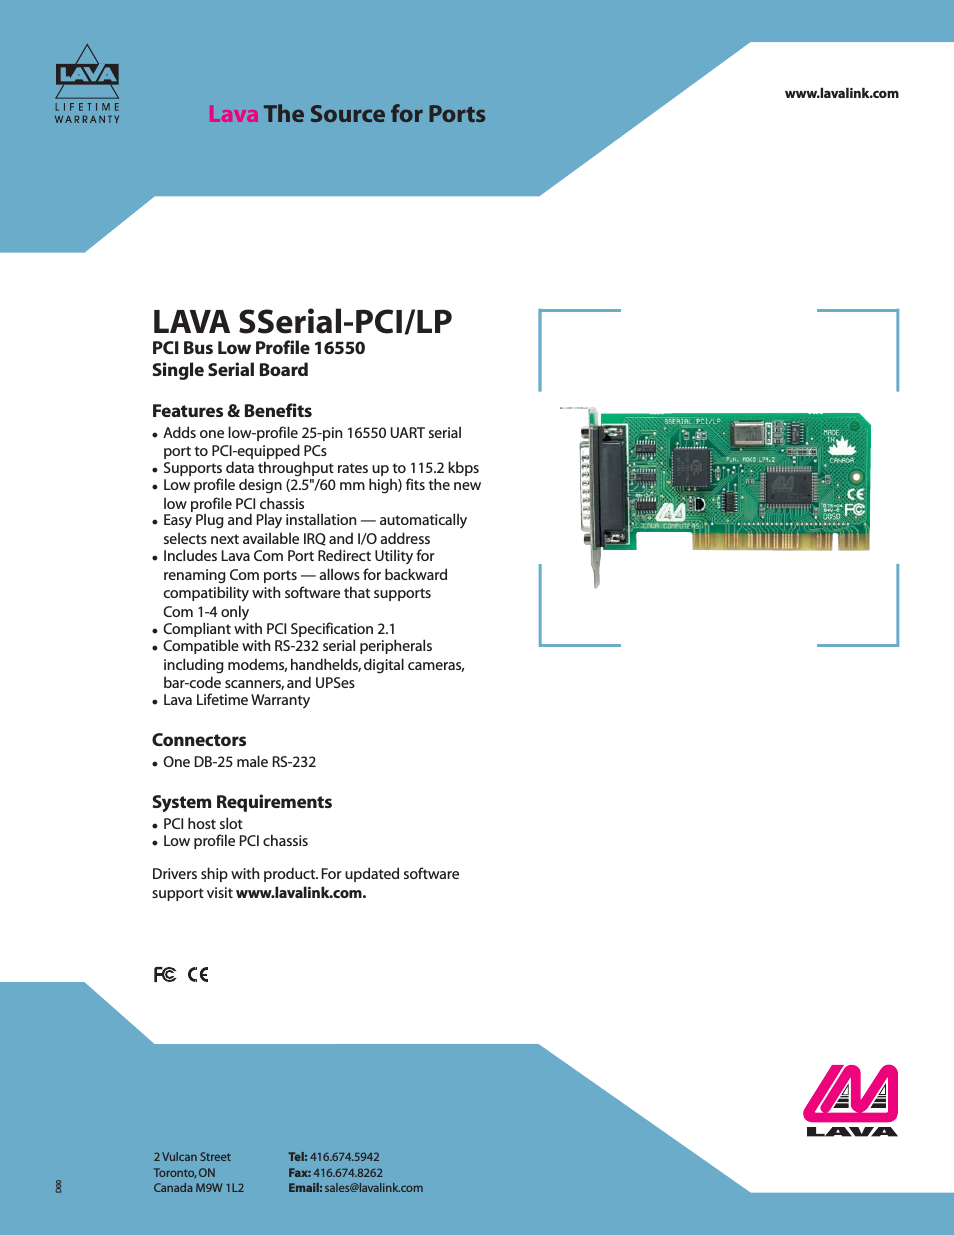 LAVA SSerial-PCI/LP